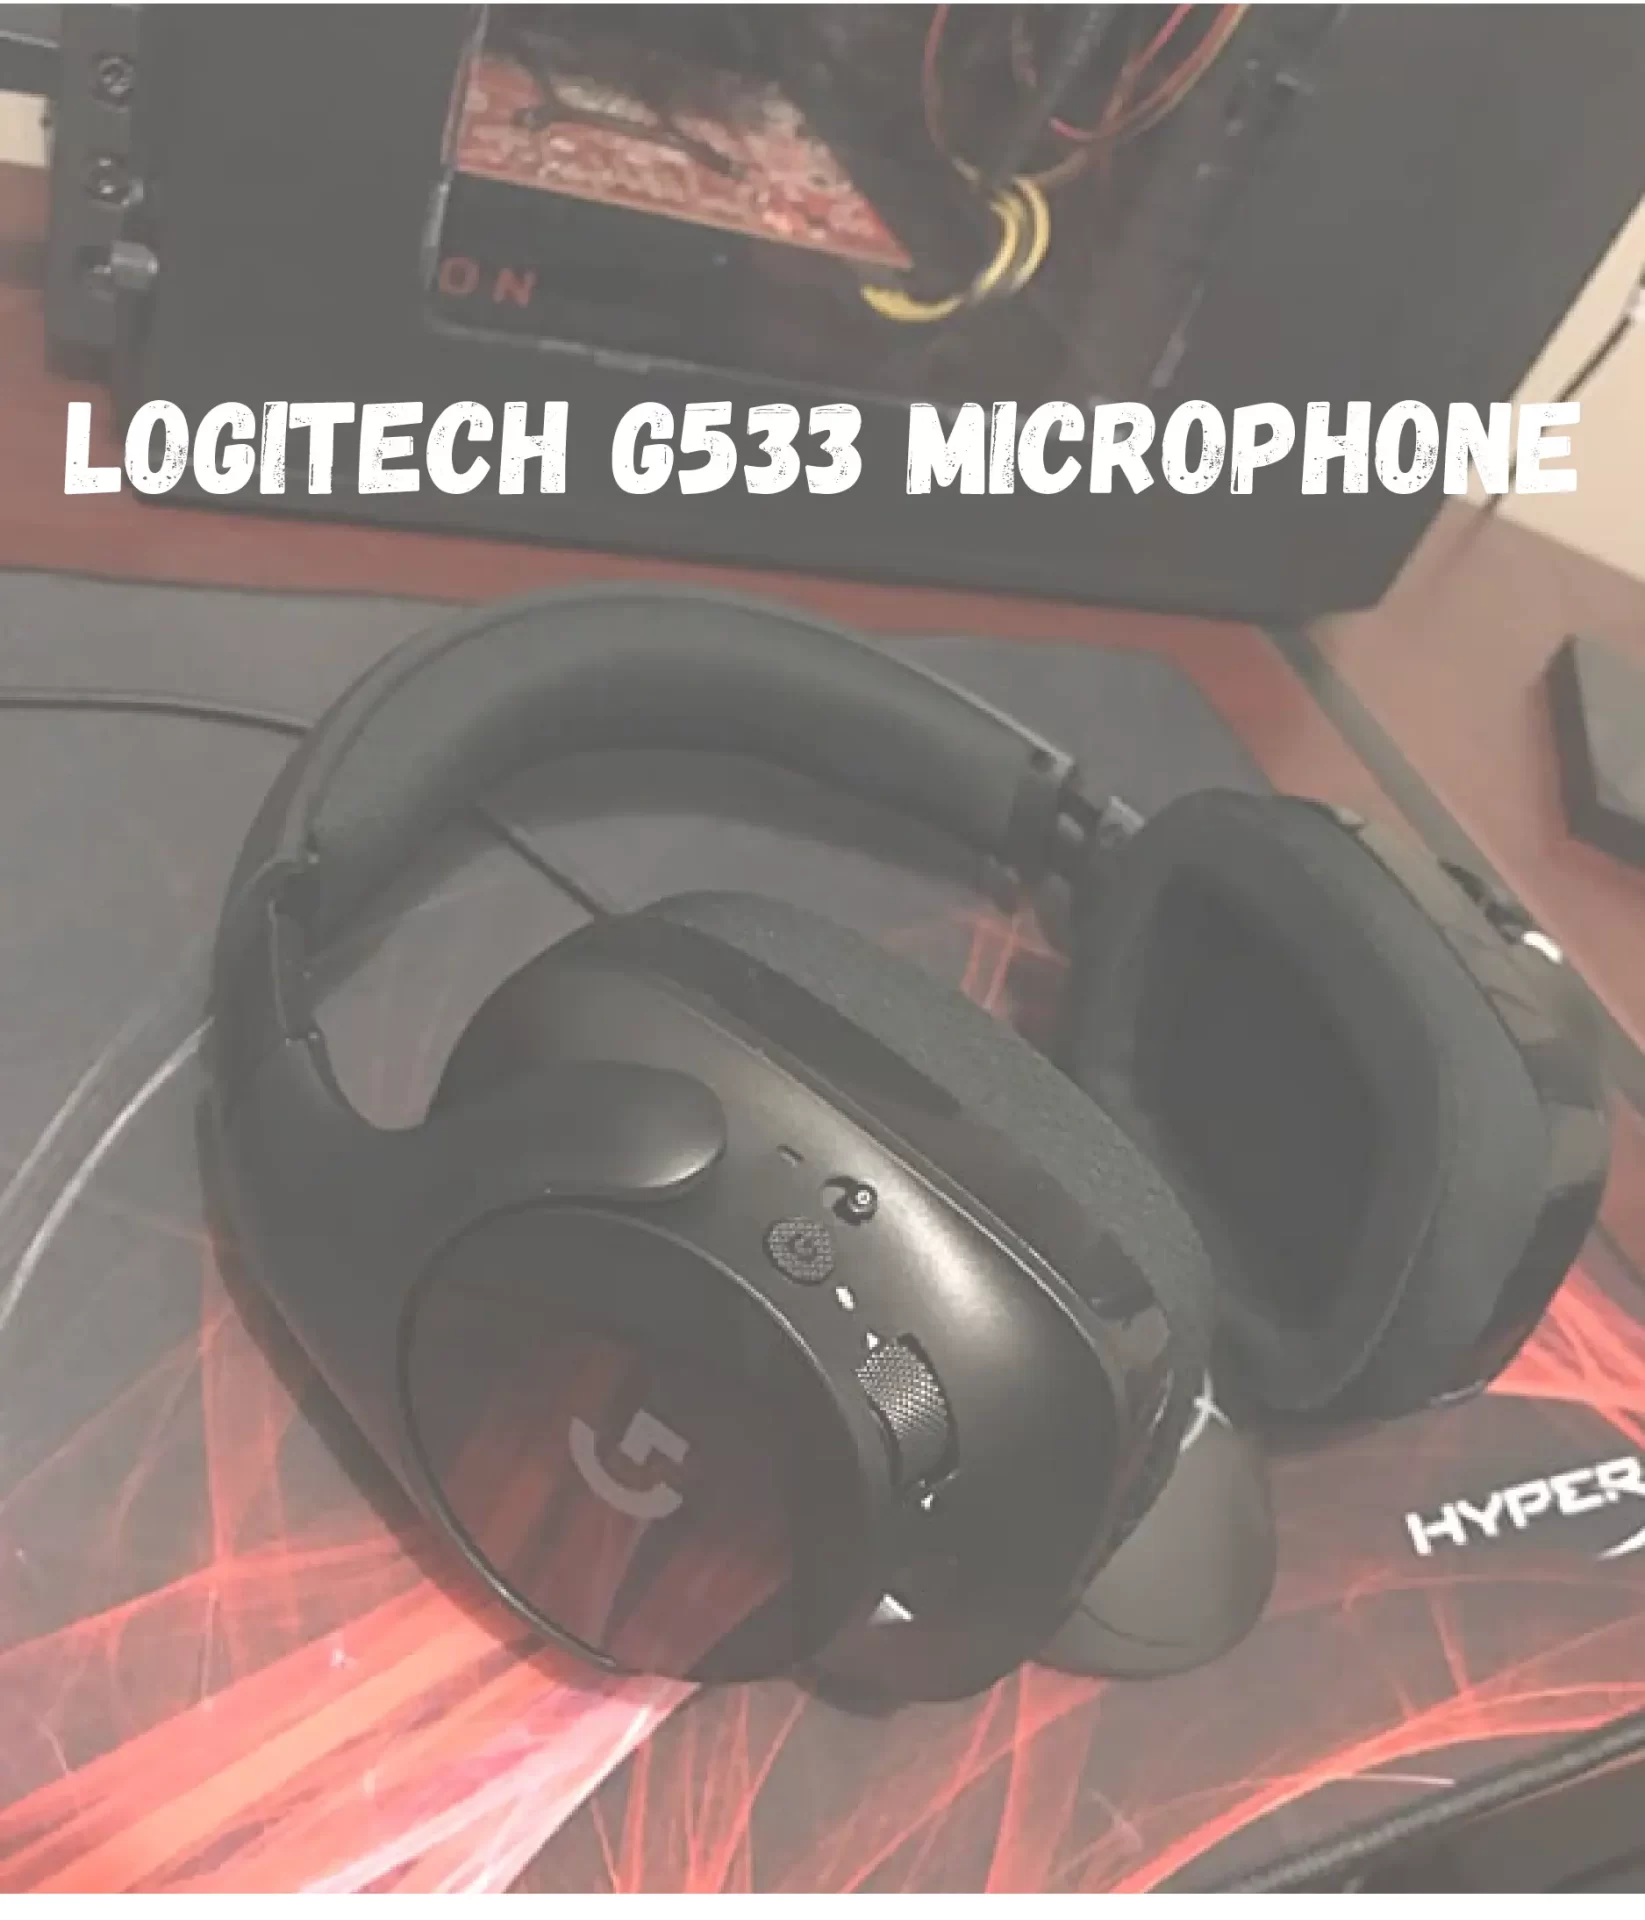 Logitech G533 Microphone Not Working?